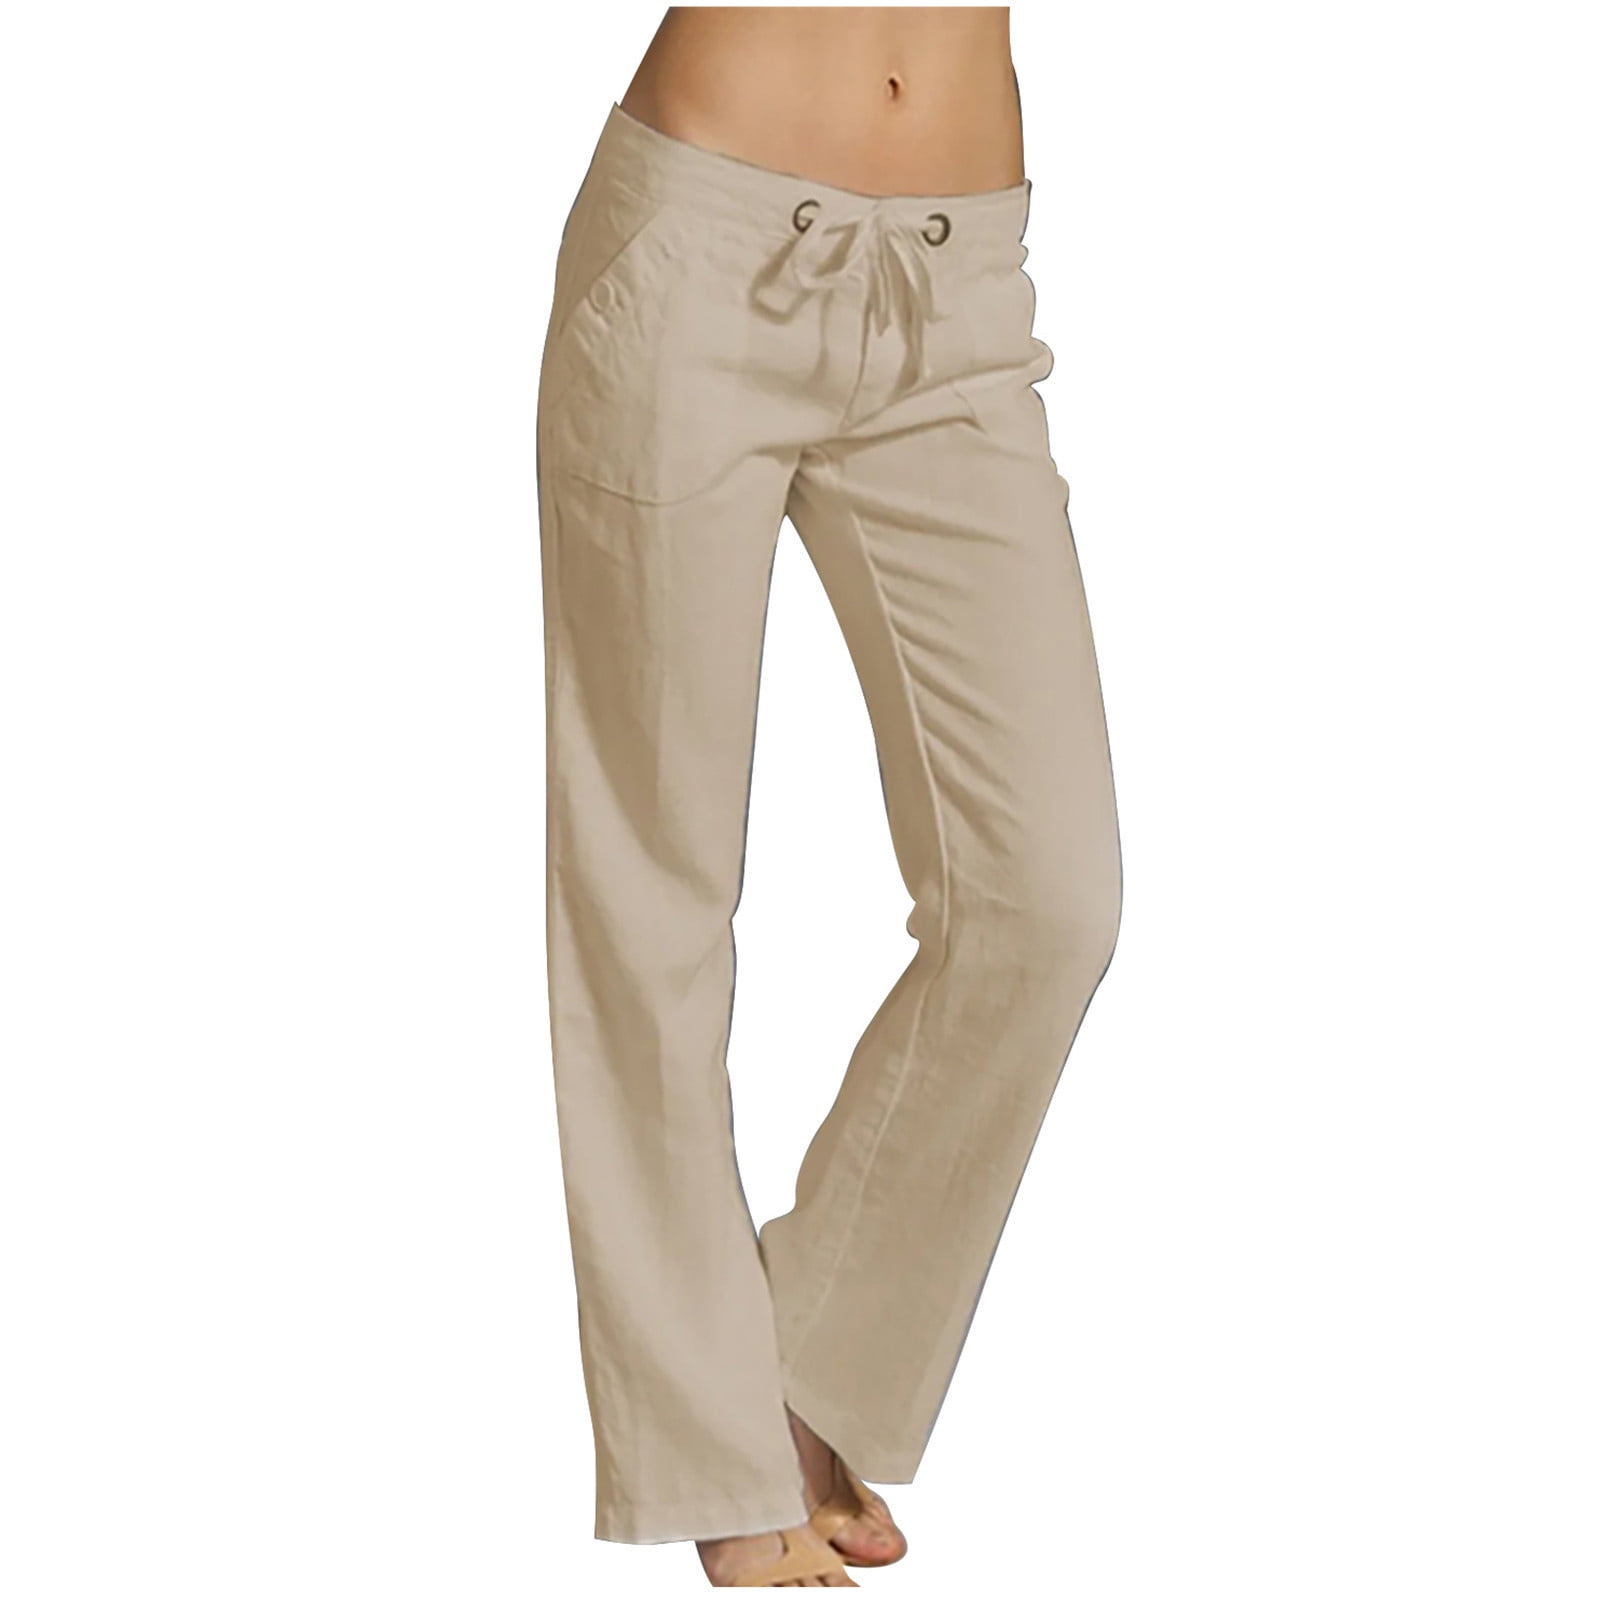 Women's Light Beige Low Rise Cotton Linen Pants